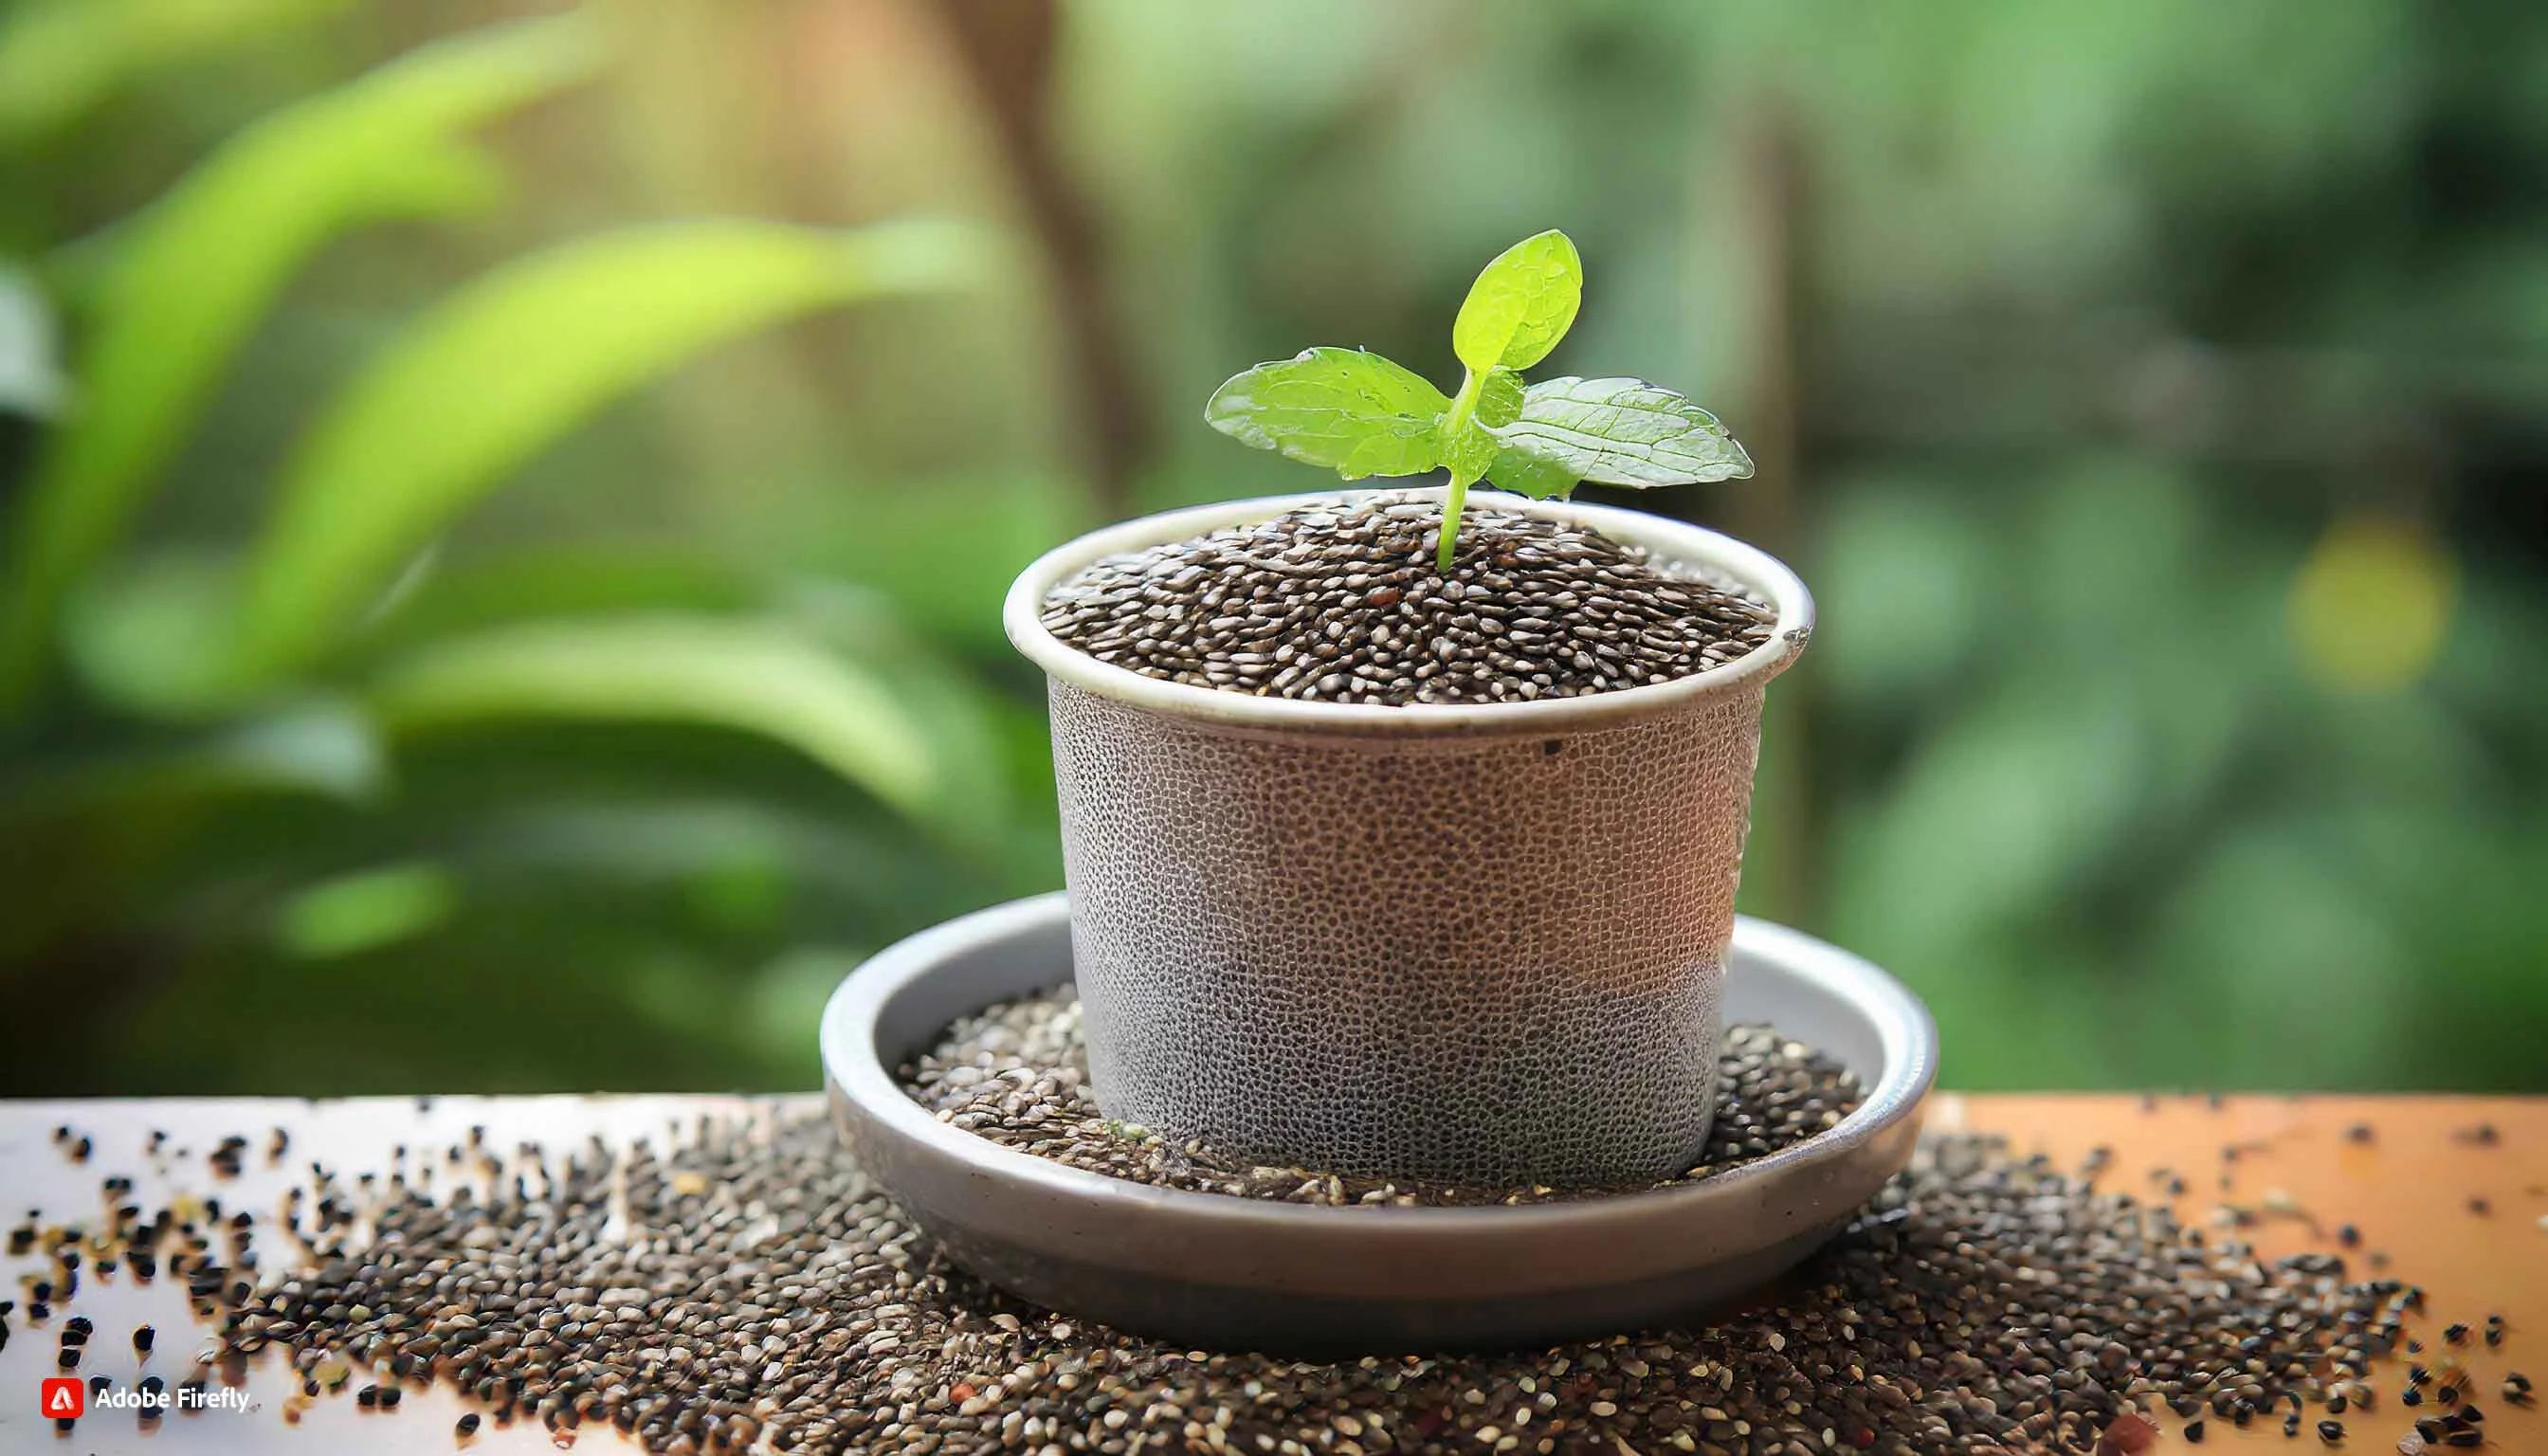 Chia Seeds in Hindi चिया सीड्स घर पर कैसे उगाएं, पौधे की देखभाल कैसे करें – A Complete Guide to Growing and Harvesting Chia Seeds in Hindi